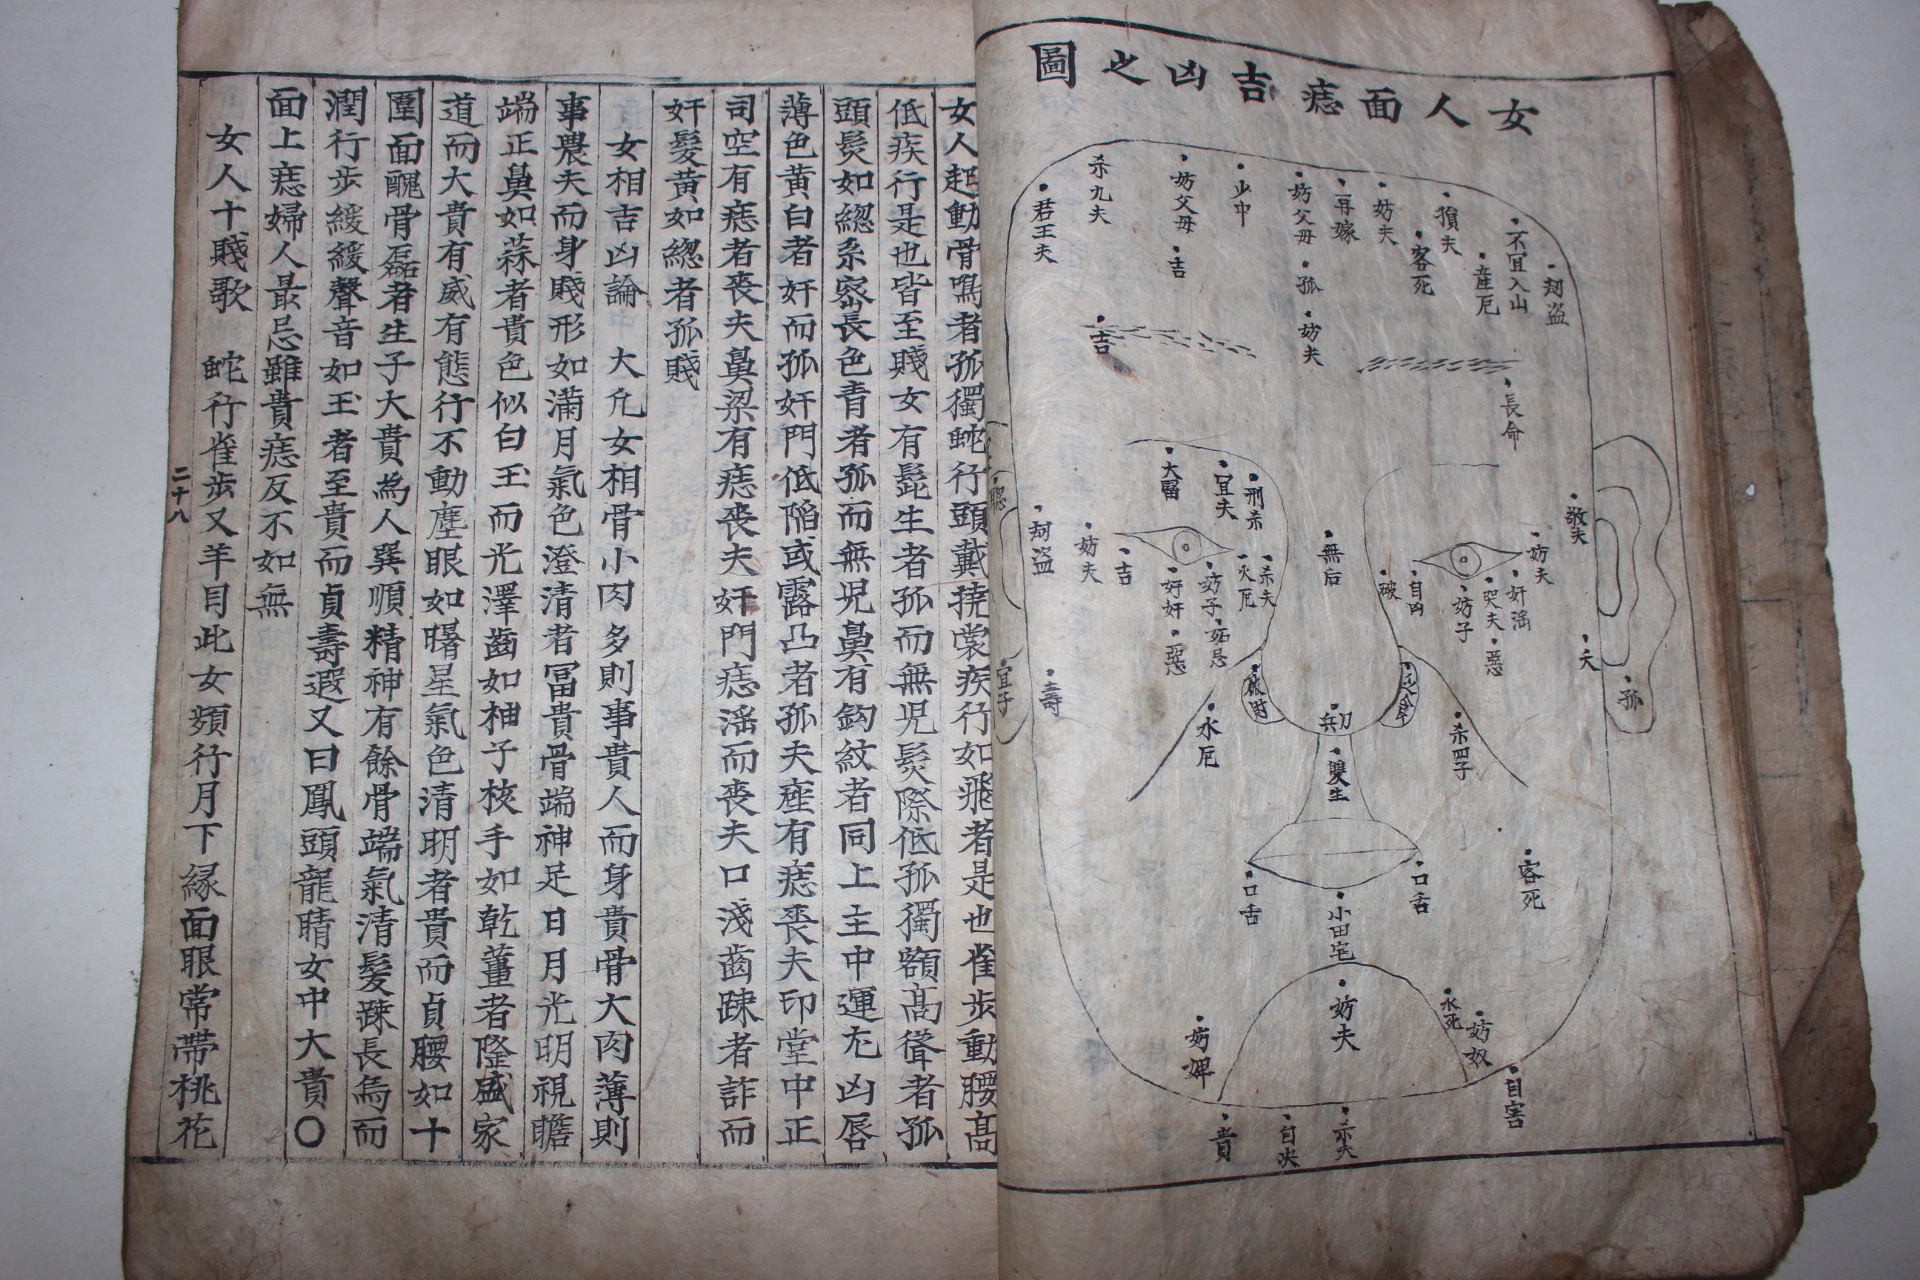 300년이상된 고필사본 수경비록(水鏡秘錄)